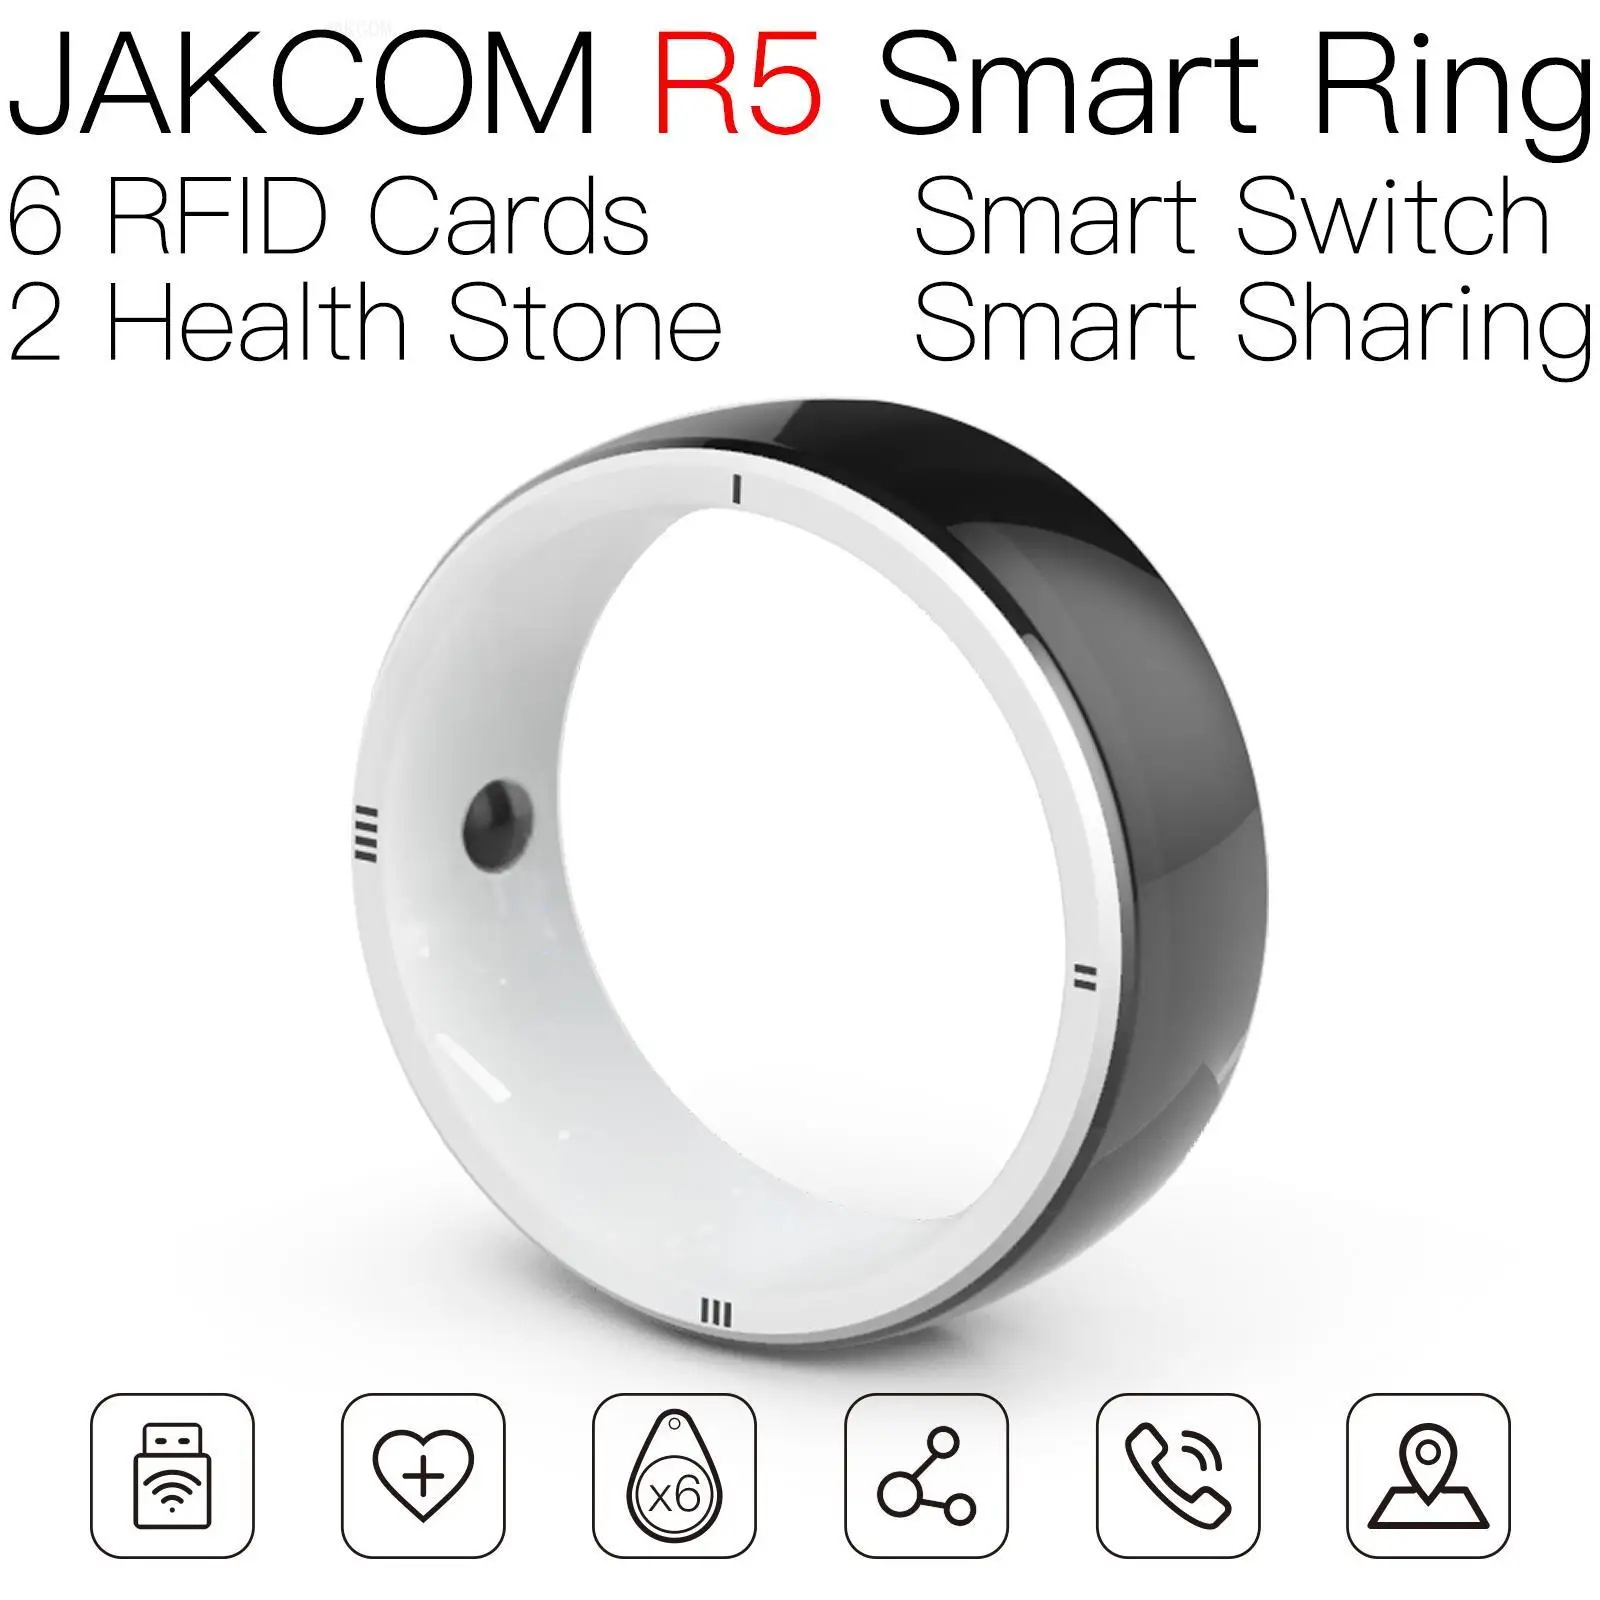 

Умное кольцо JAKCOM R5 лучше, чем стандартные карты, гаджеты, технология Smart uid, Сменные Металлические Кольца op com, перезаписываемые rfid